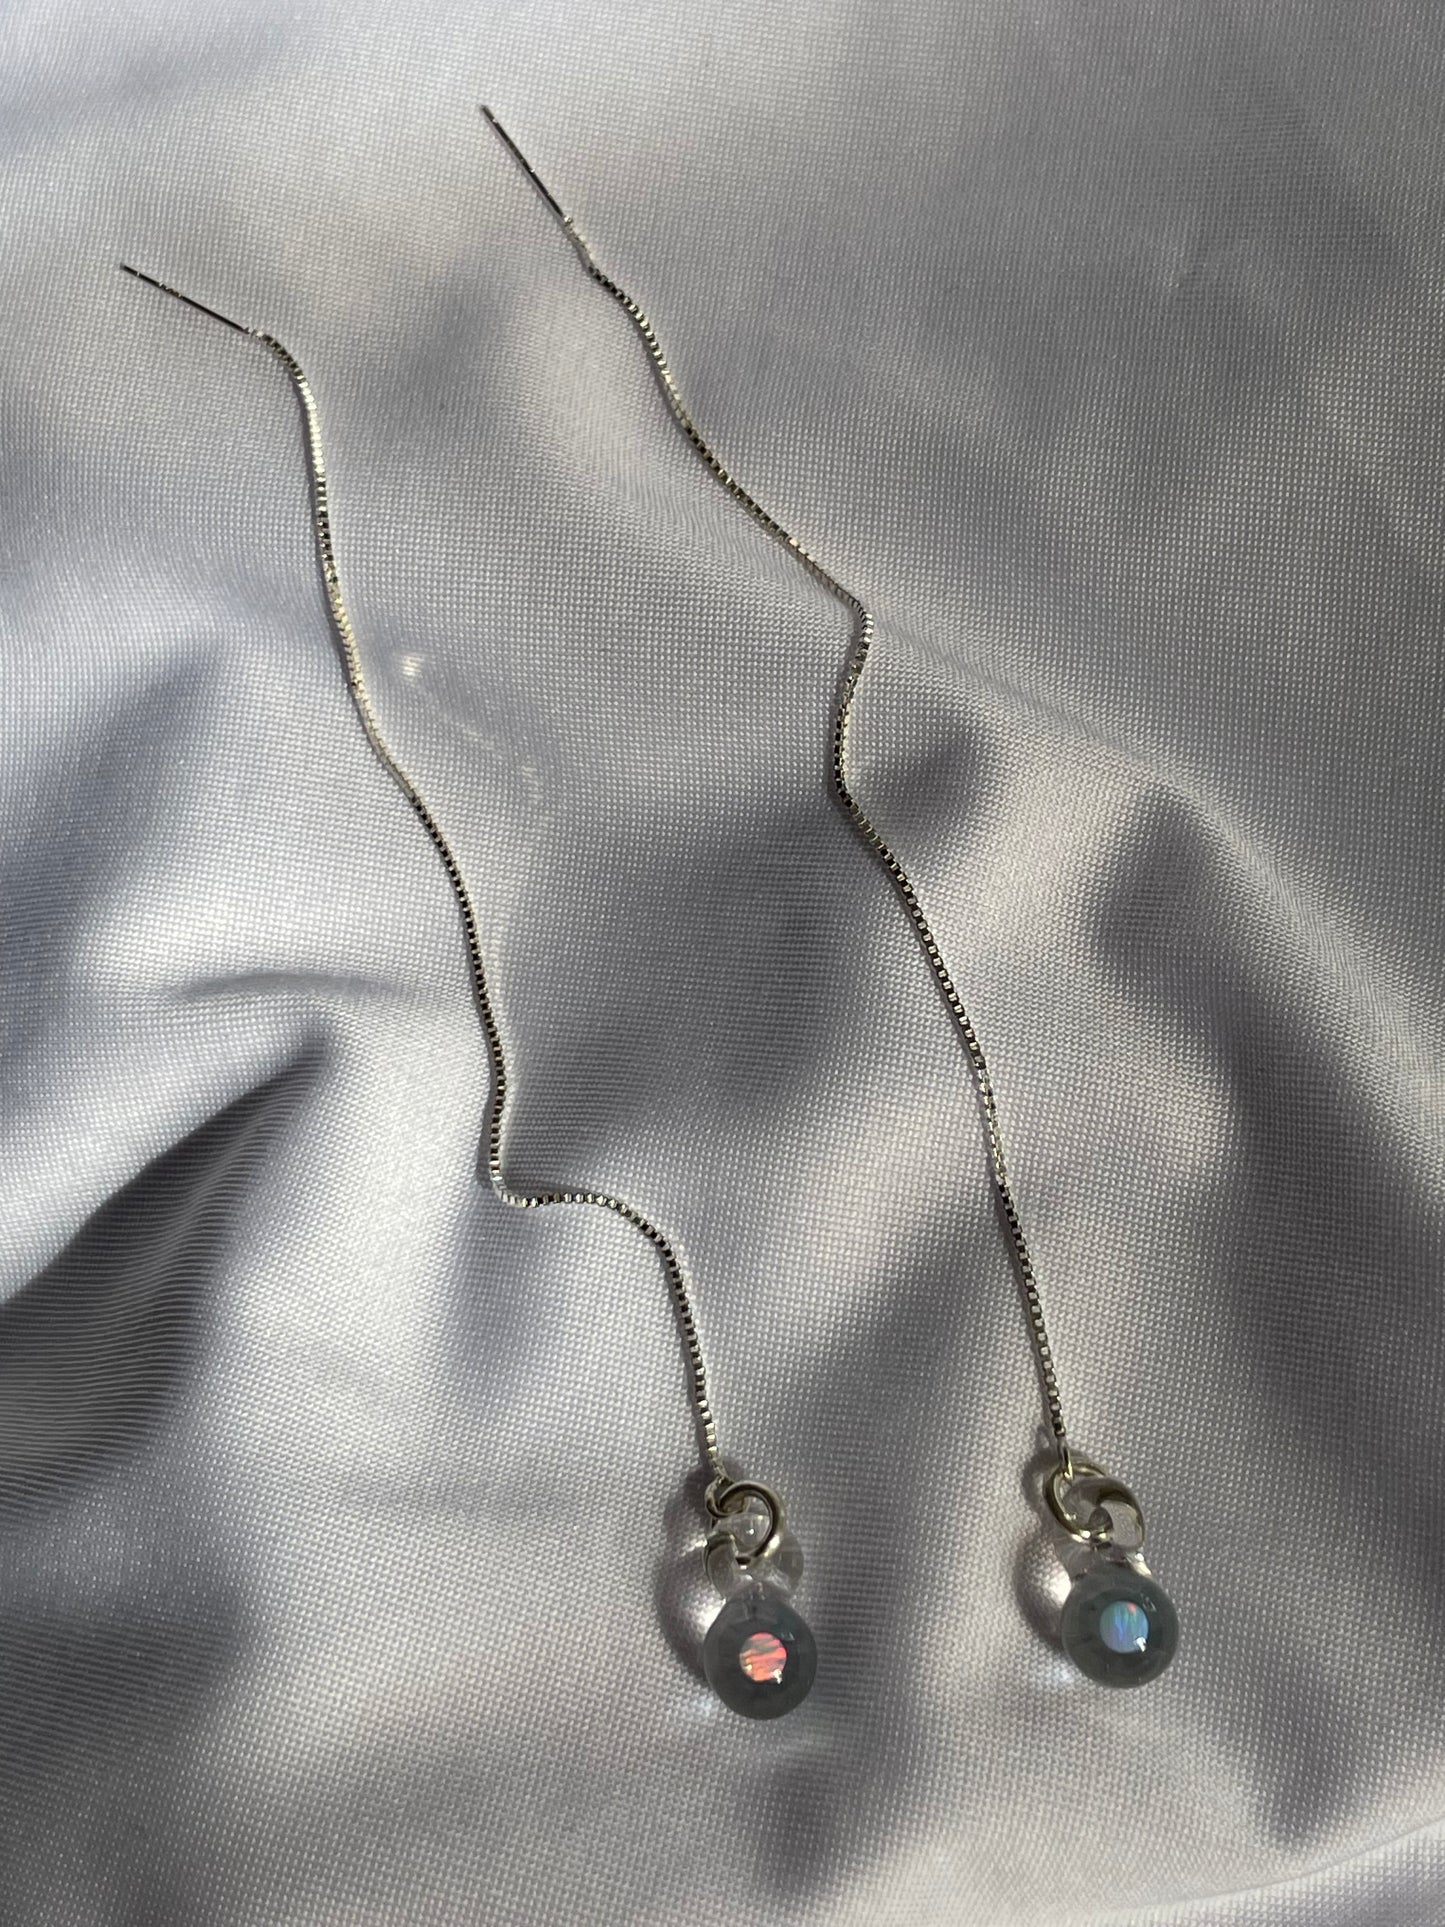 White Opal Thread Earrings